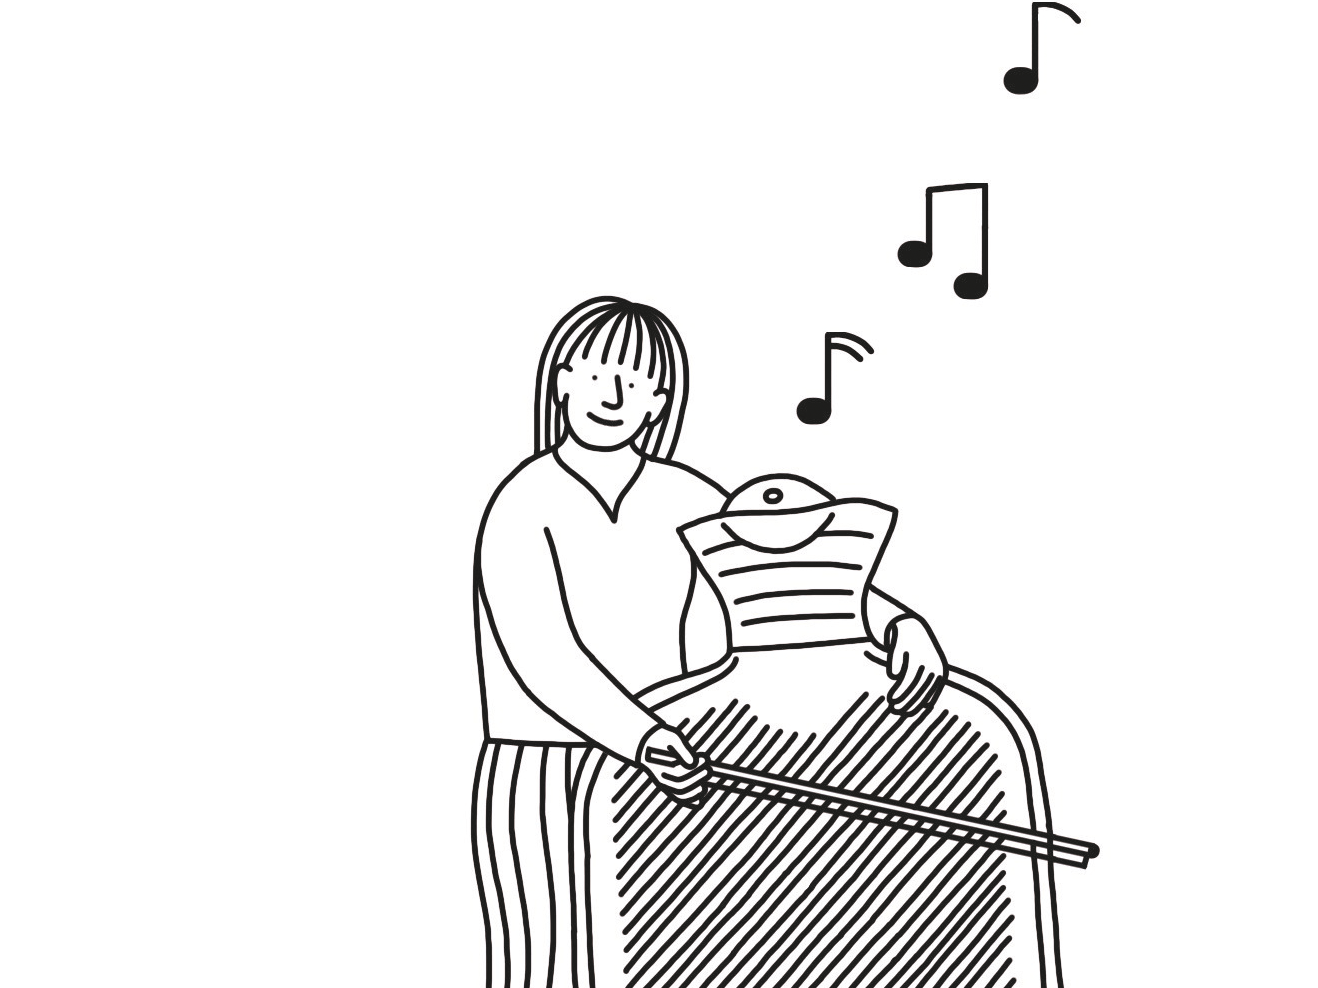 Illustration einer Figur, die Kontrabass spielt - aber anstelle des Instruments ist eine große Wärmflasche zu sehen